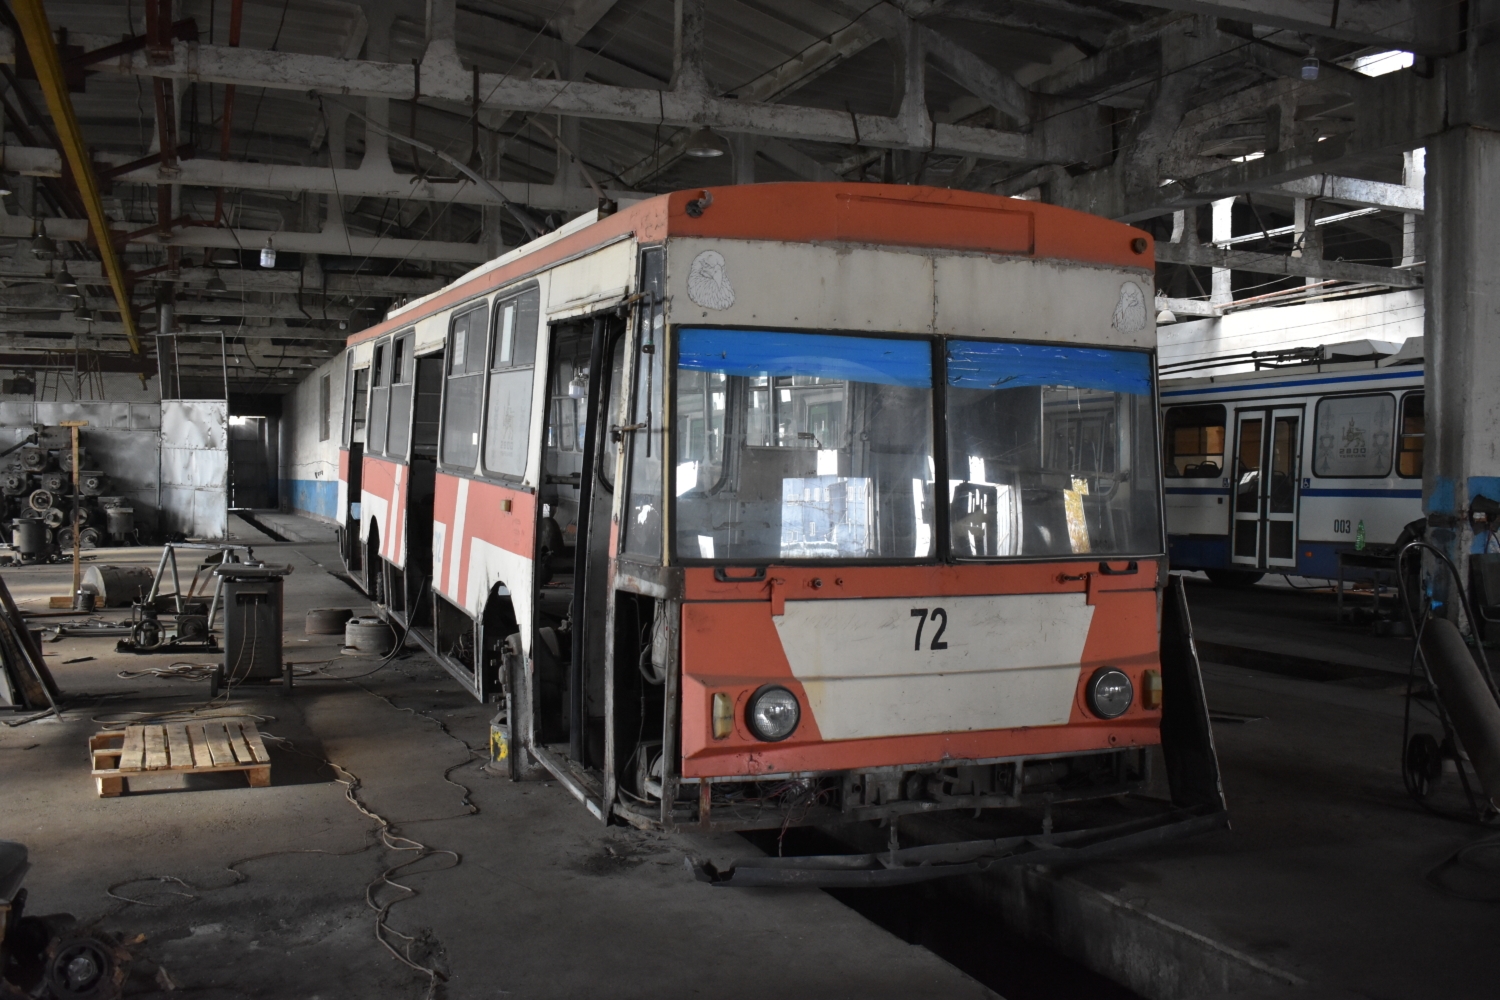 Trolejbus ev. č. 72 byl zamýšlen jako historický. V loňském roce na něm začaly opravy mechanické části, které měly zajistit další setrvání trolejbusu v provozu. Ze záměru ale sešlo a oprava již nebyla dokončena. (foto: Libor Hinčica)